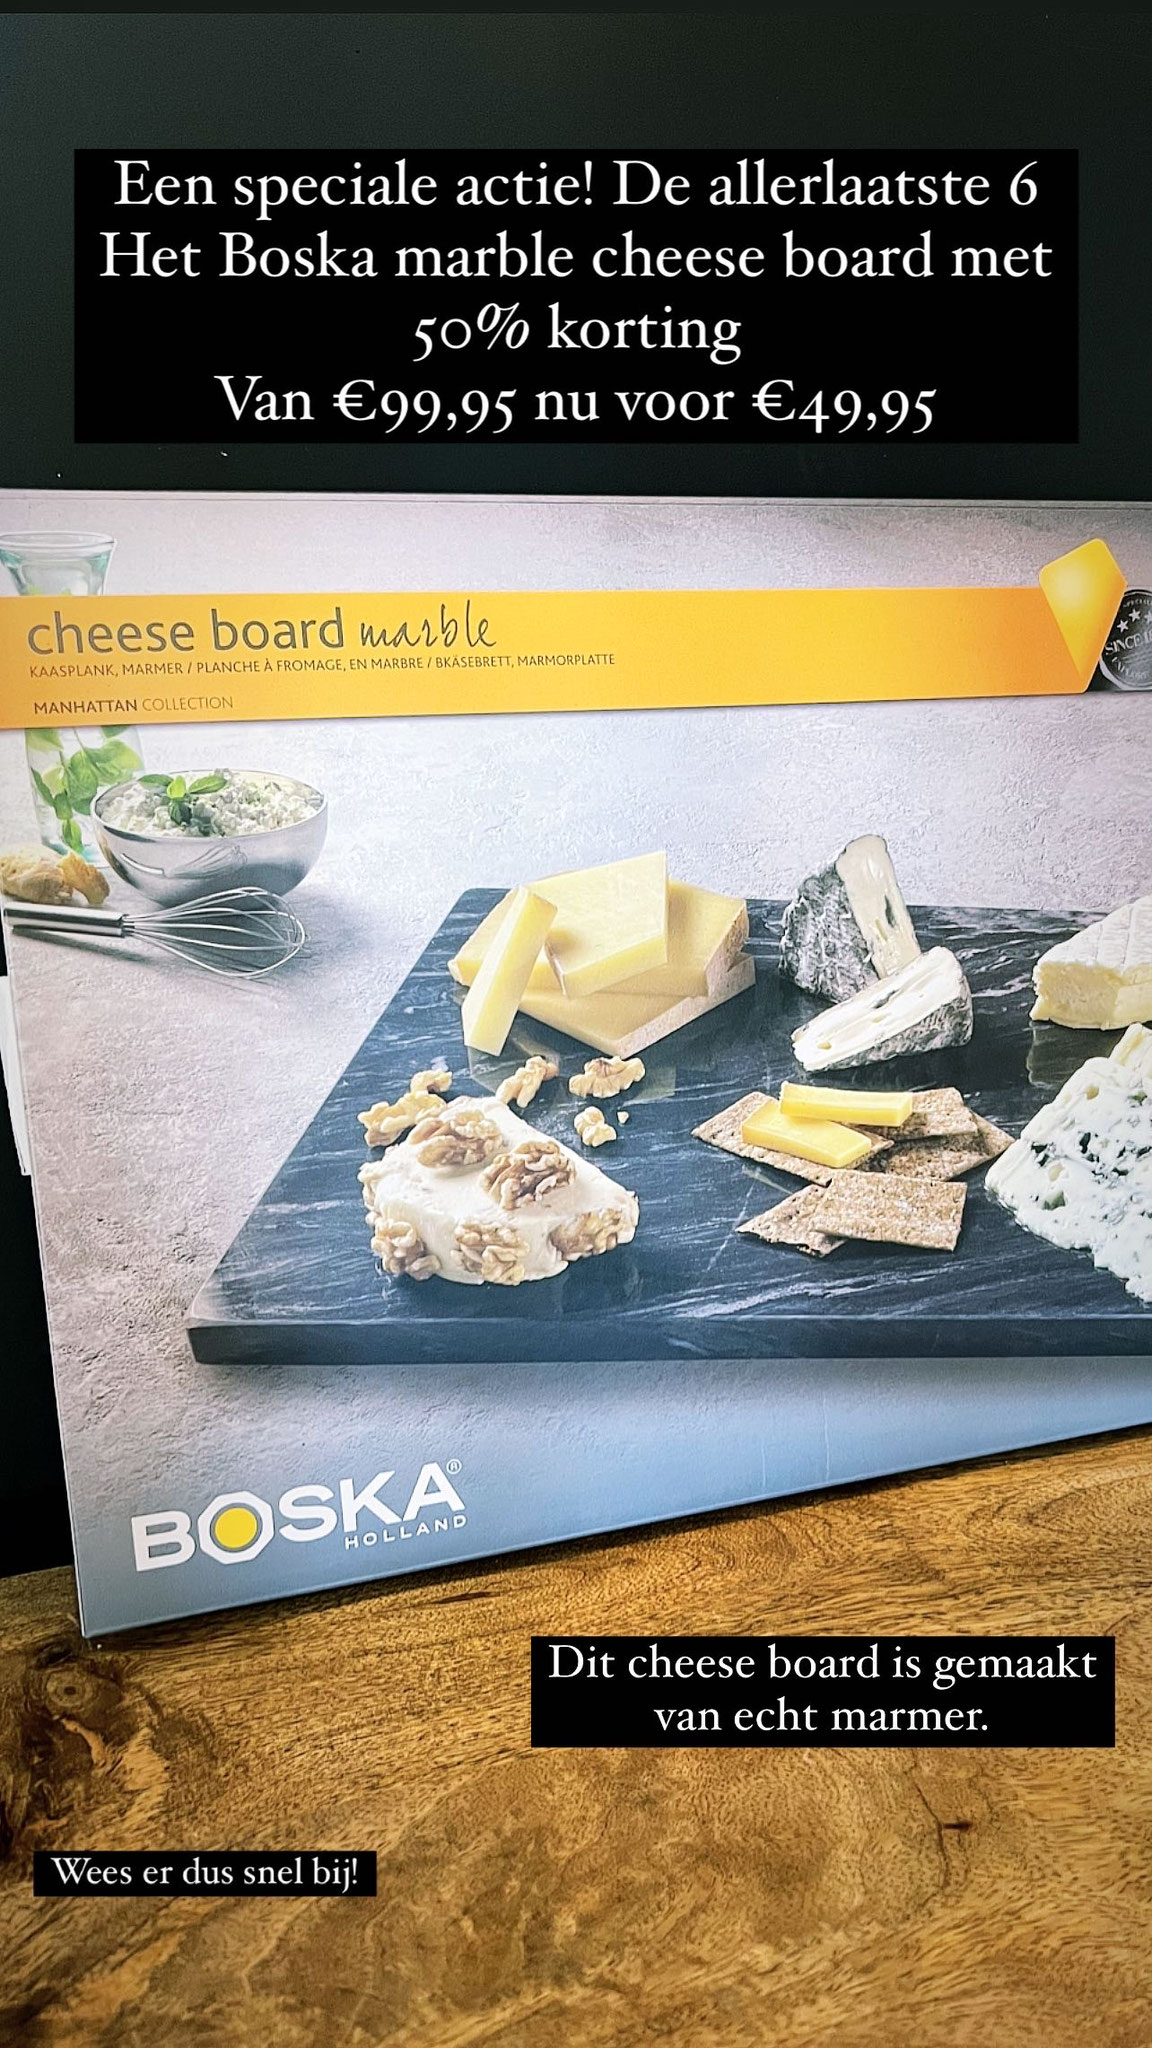 Echt marmere kaas bord van Boska van €99,95 nu voor €49,95 de laatste 6